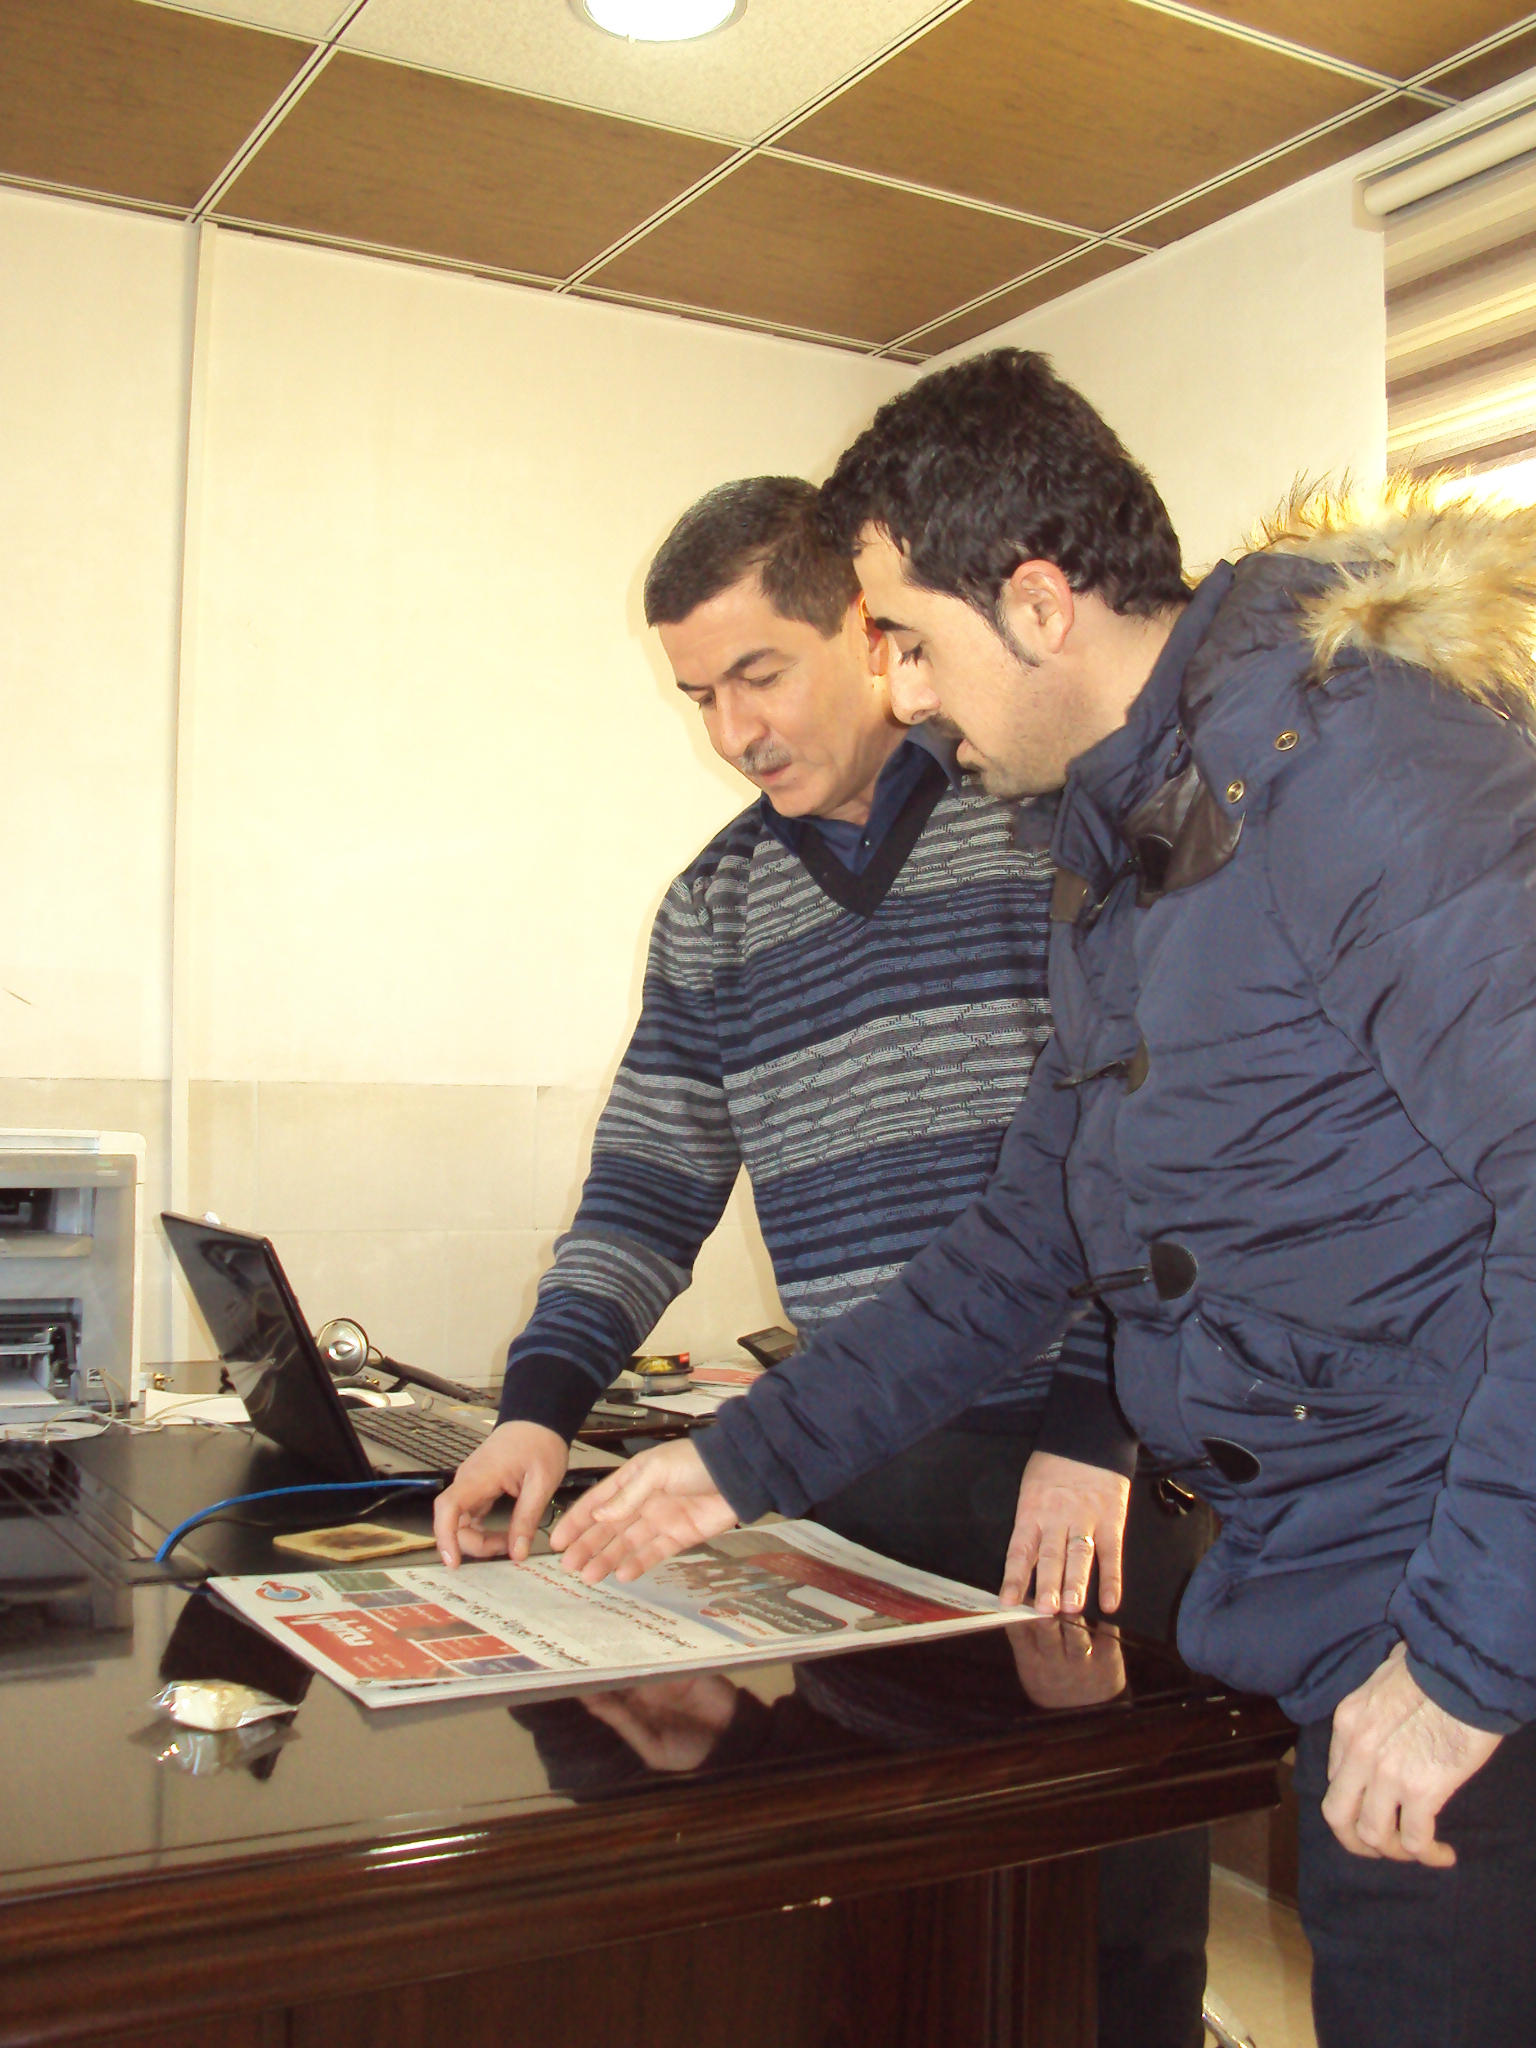 Asos Hardi (l.) in der Redaktion "Awene" (der Spiegel) im kurdischen Suleimanija 